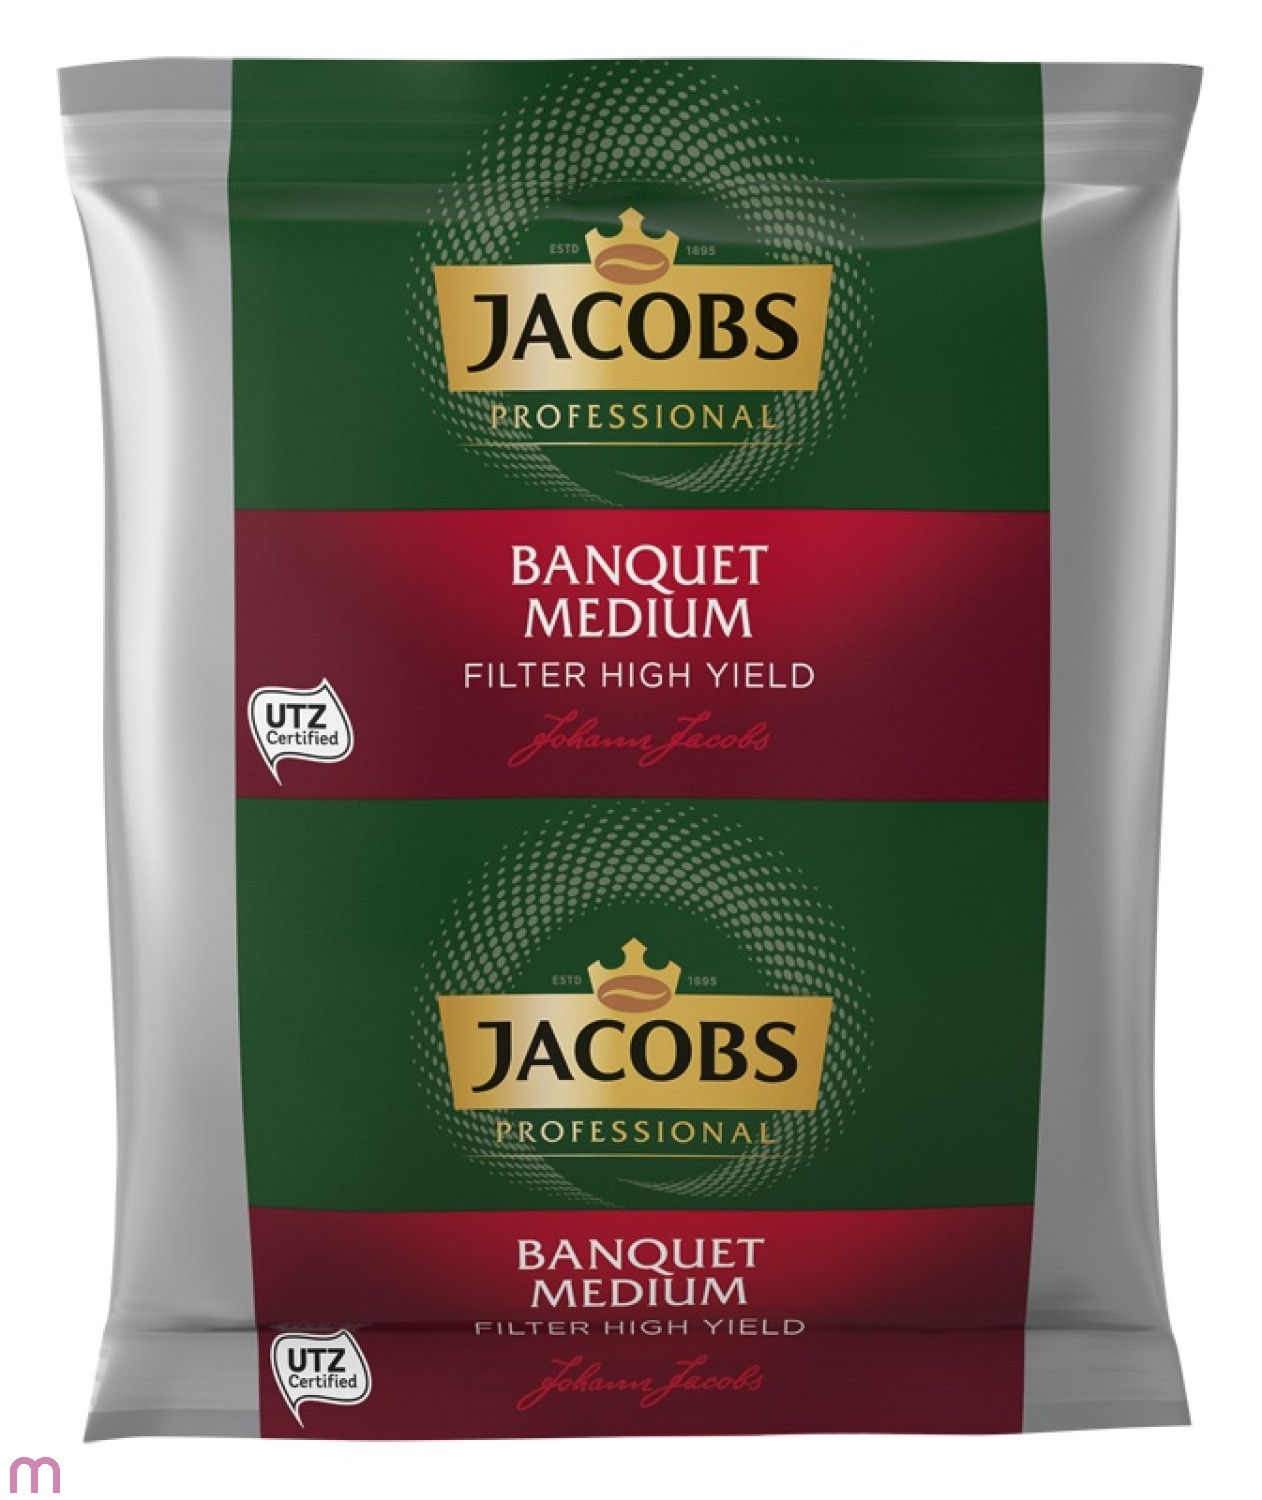 Jacobs Banquet Medium Filter High Yield 100 x 50 g, gemahlen, UTZ zertifiziert